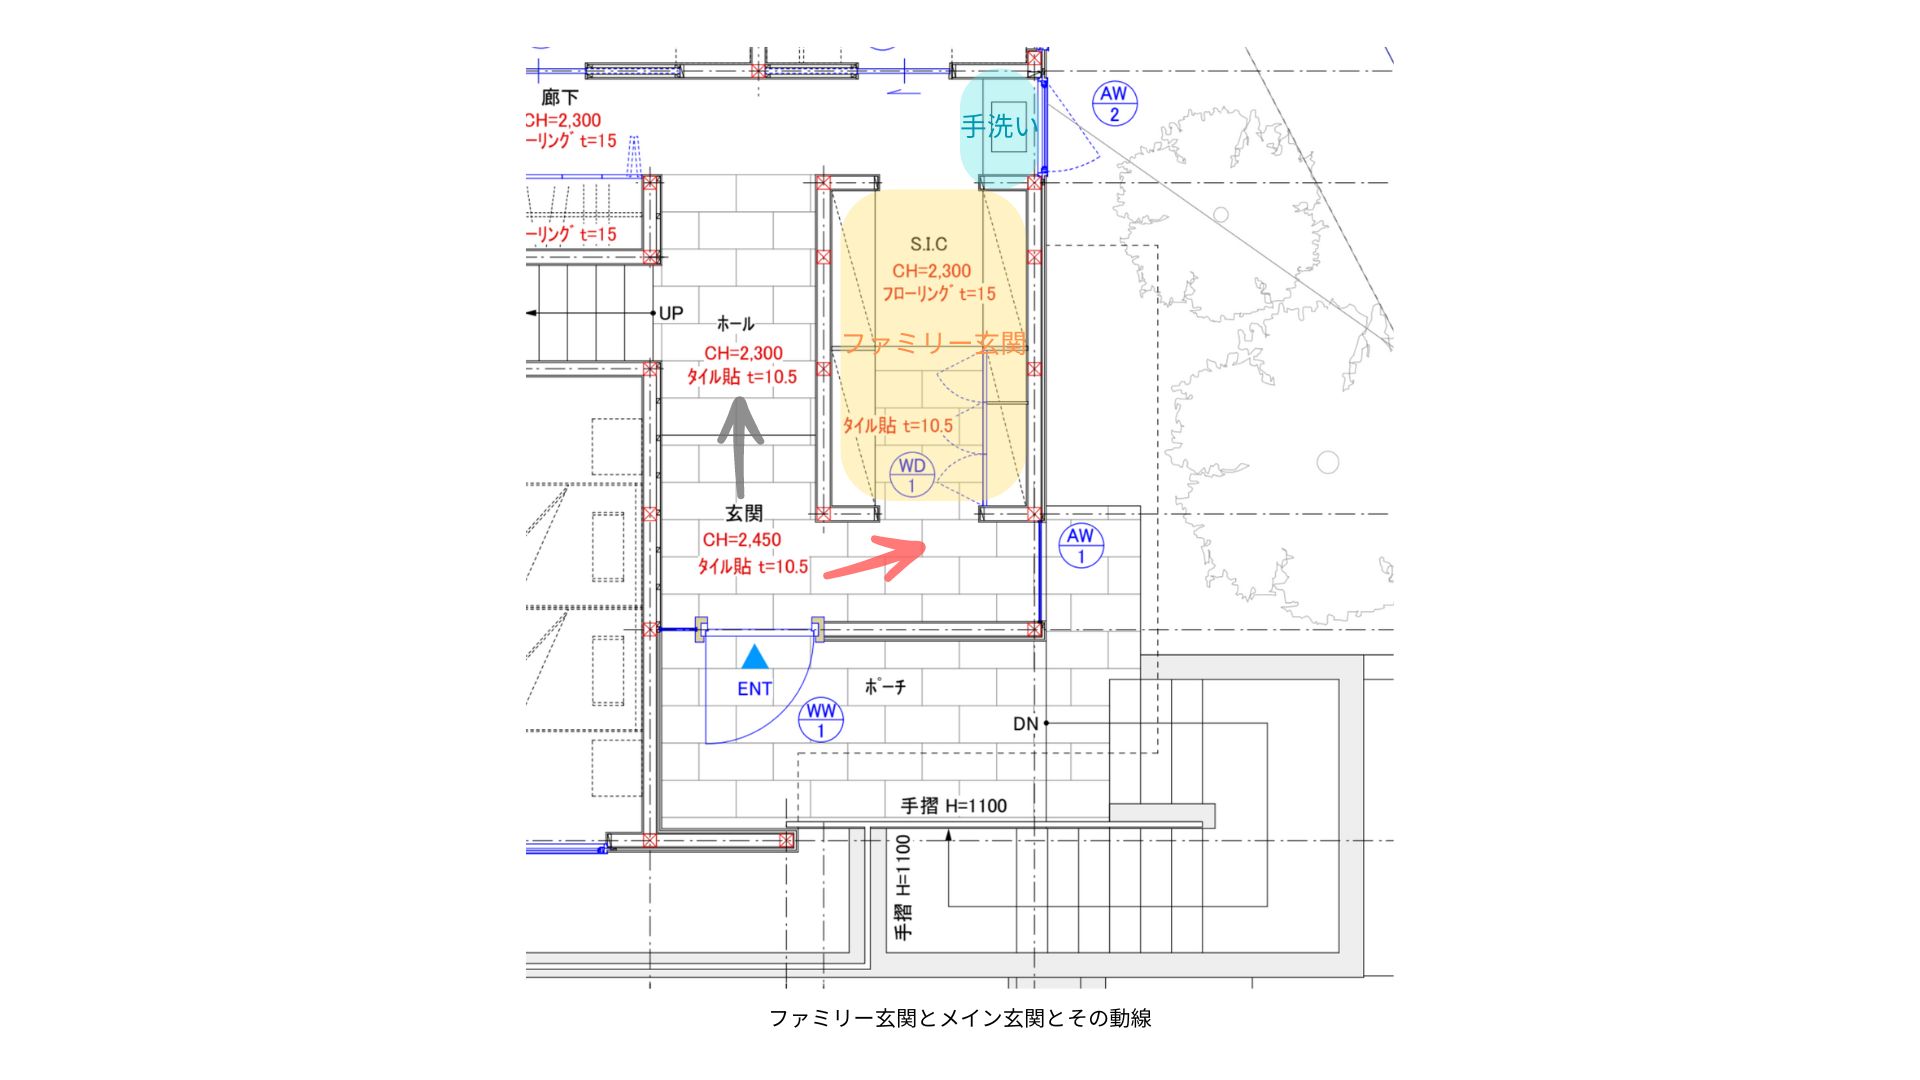 メイン玄関とファミリー玄関-鎌倉の家_utide-blog